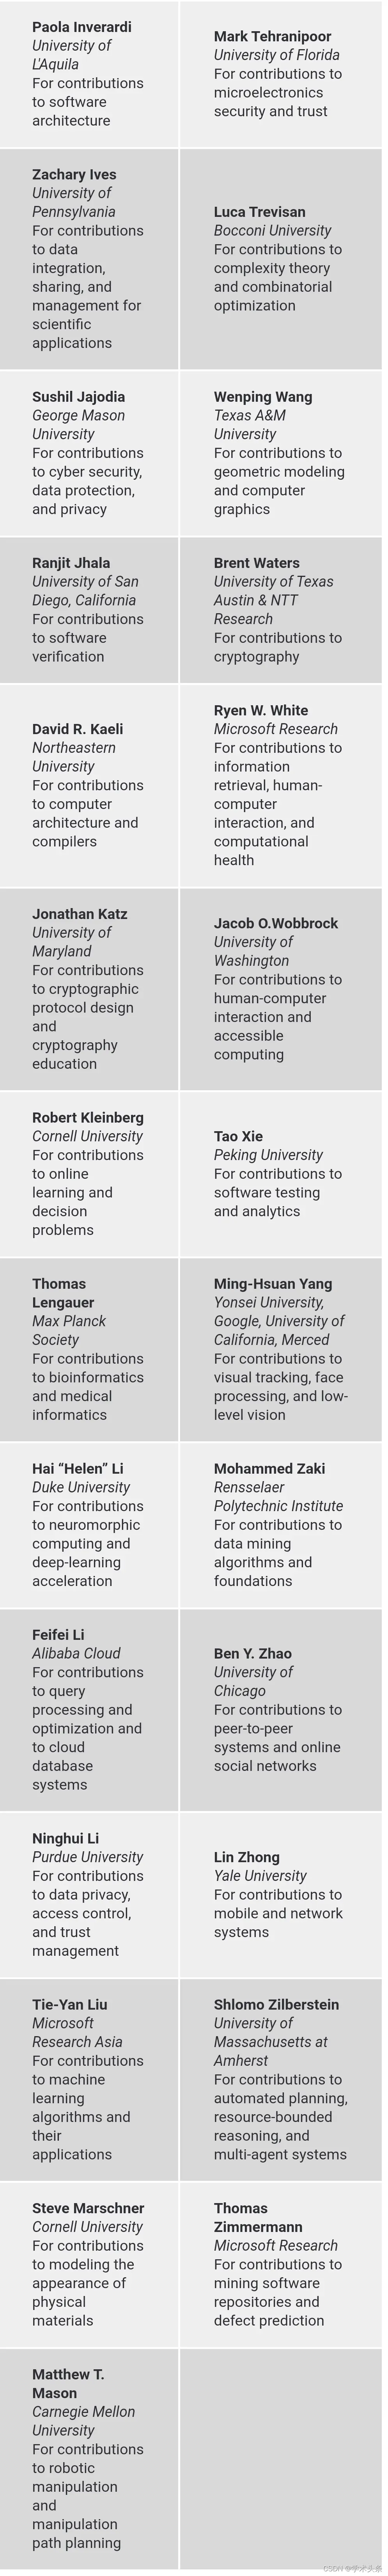 最新ACM Fellow名单发布，唐杰等4名中国大陆学者当选，中国机构入选人数排名第二